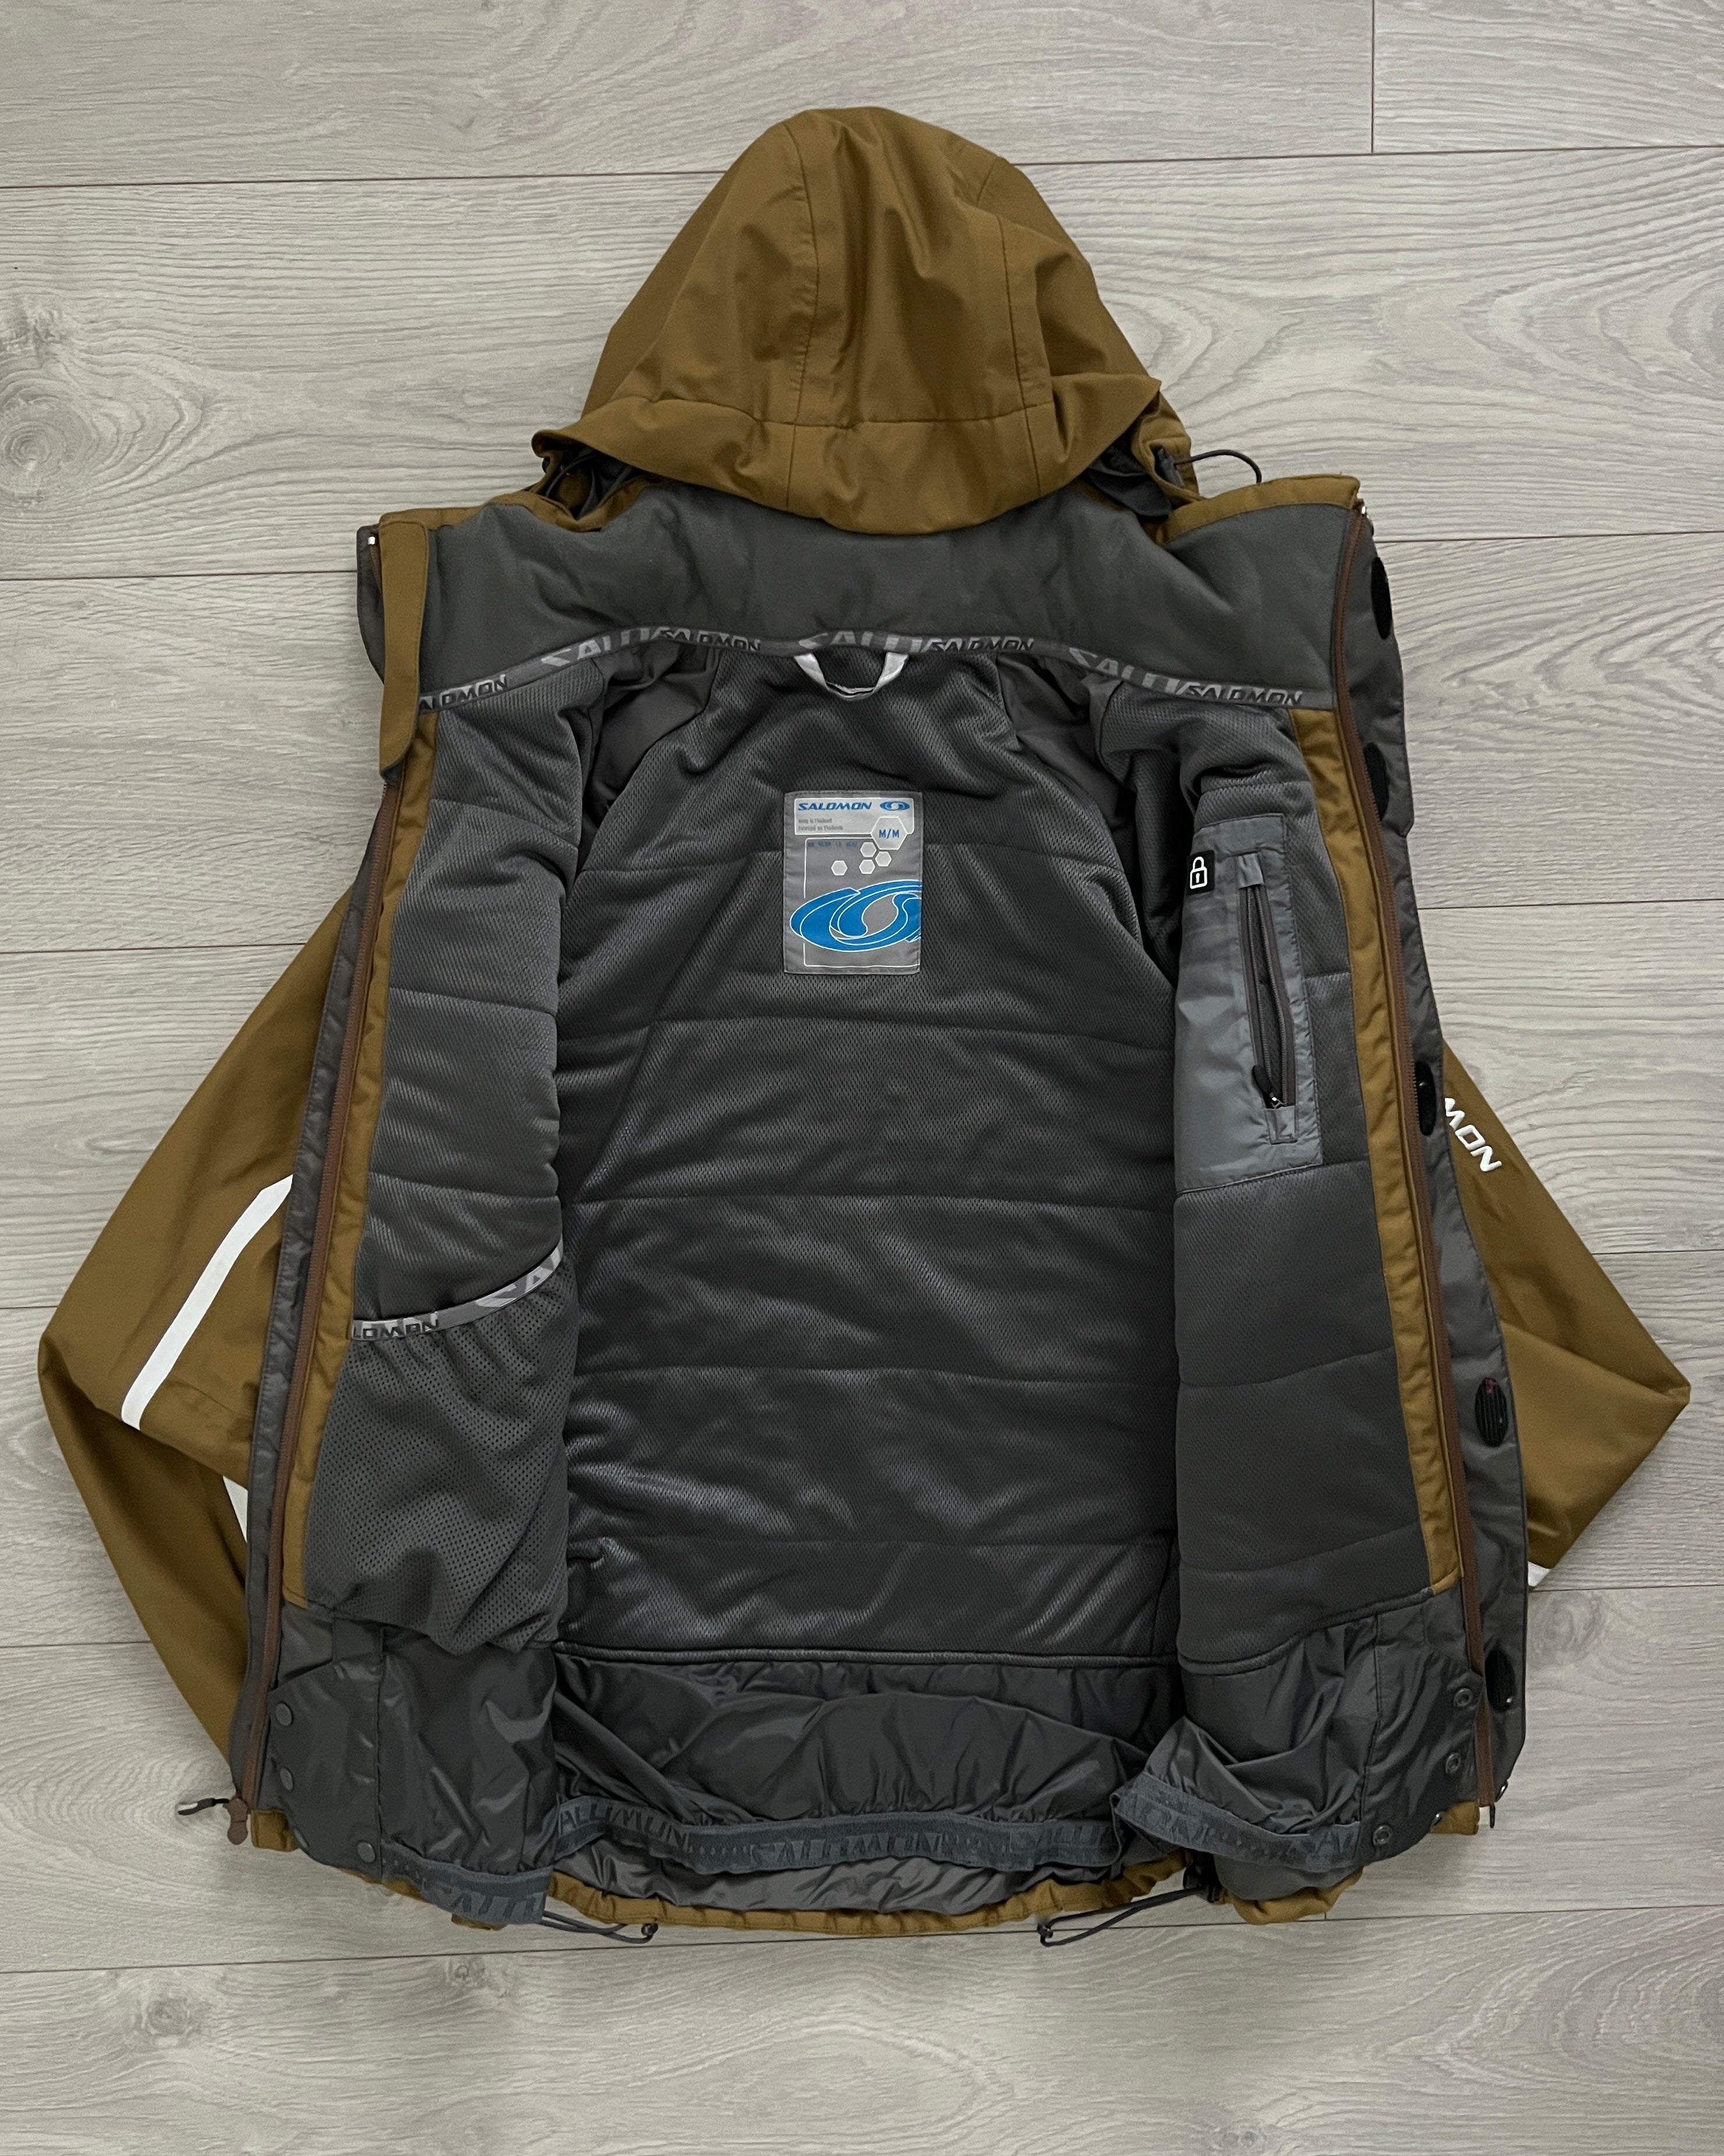 Salomon 00s Advantex Move Recco Technical Insulated Jacket - Size 